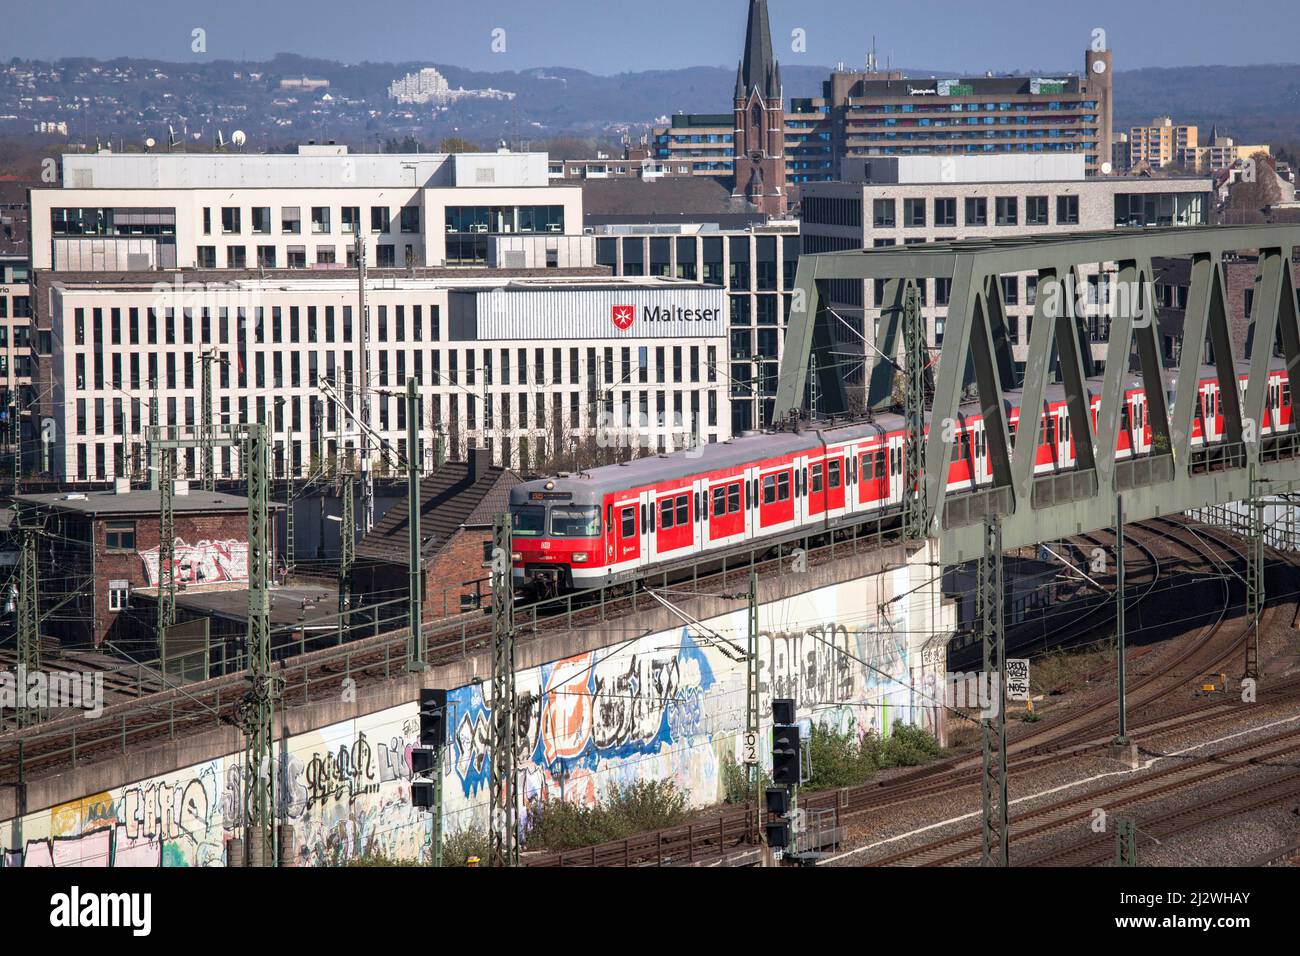 Treno locale S-Bahn Rhein-Ruhr nel quartiere Deutz, sullo sfondo la sede del Malteser Hilfdienst (MHD), Colonia, Germania. Zug d Foto Stock